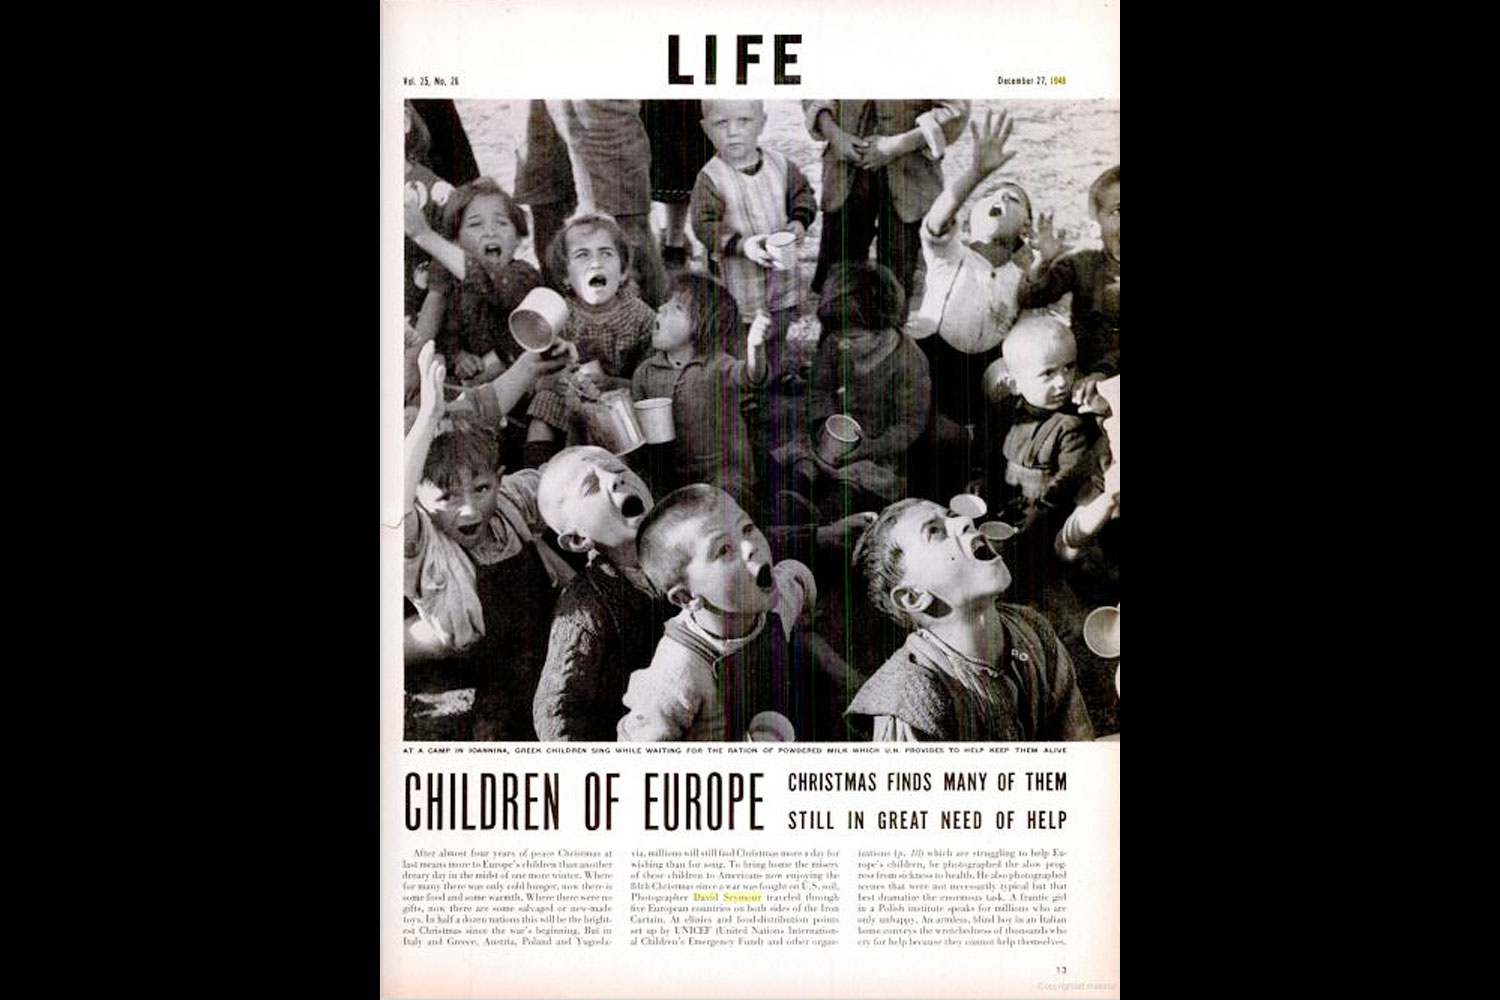 "Children of Europe," LIFE magazine, Dec. 27, 1948